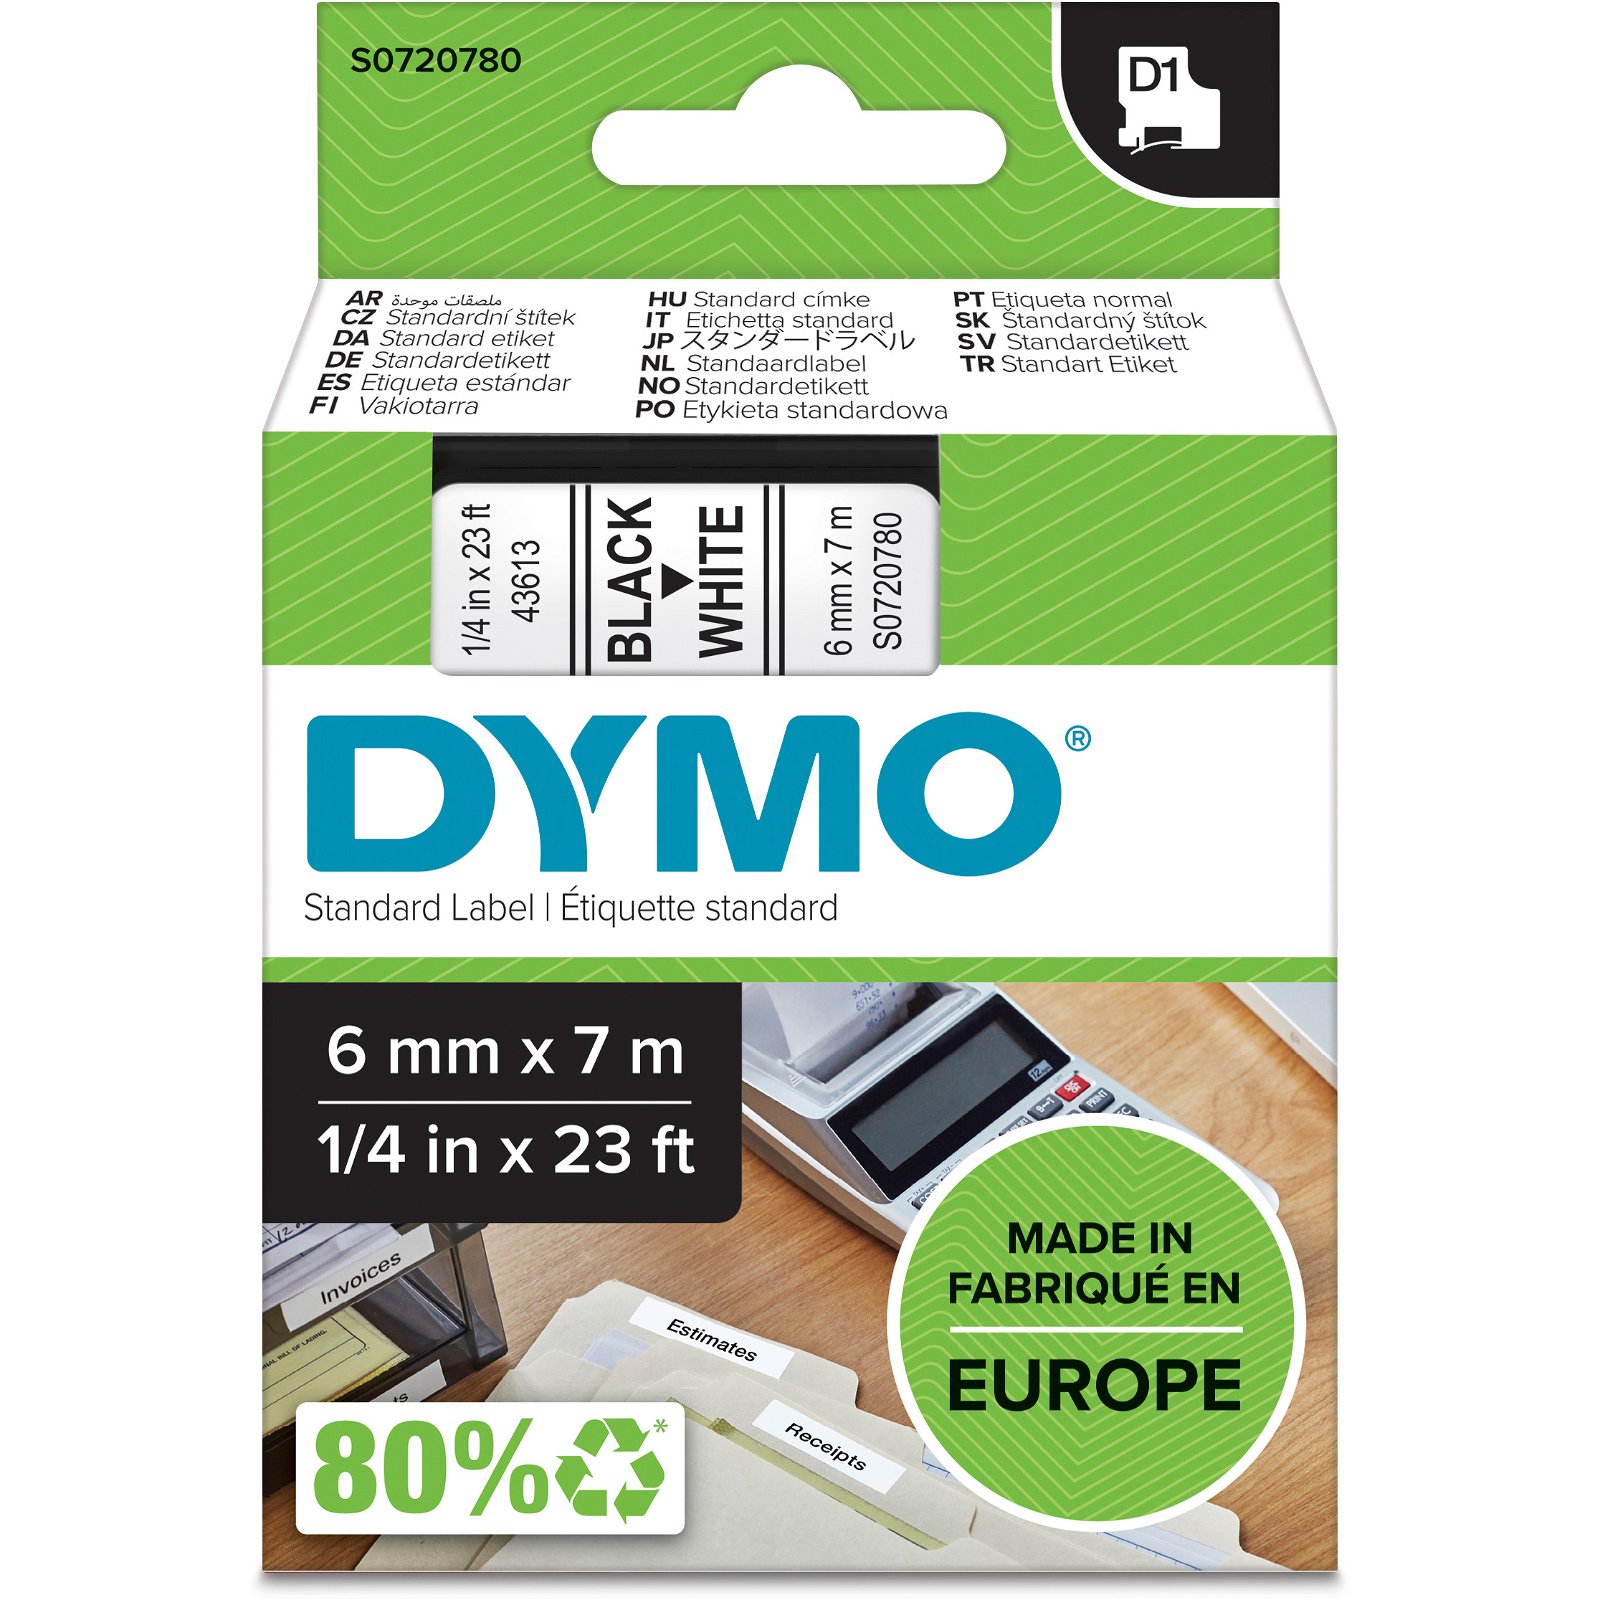 Dymo D1 standard tapekasette 6 mm sort;hvid Polyester